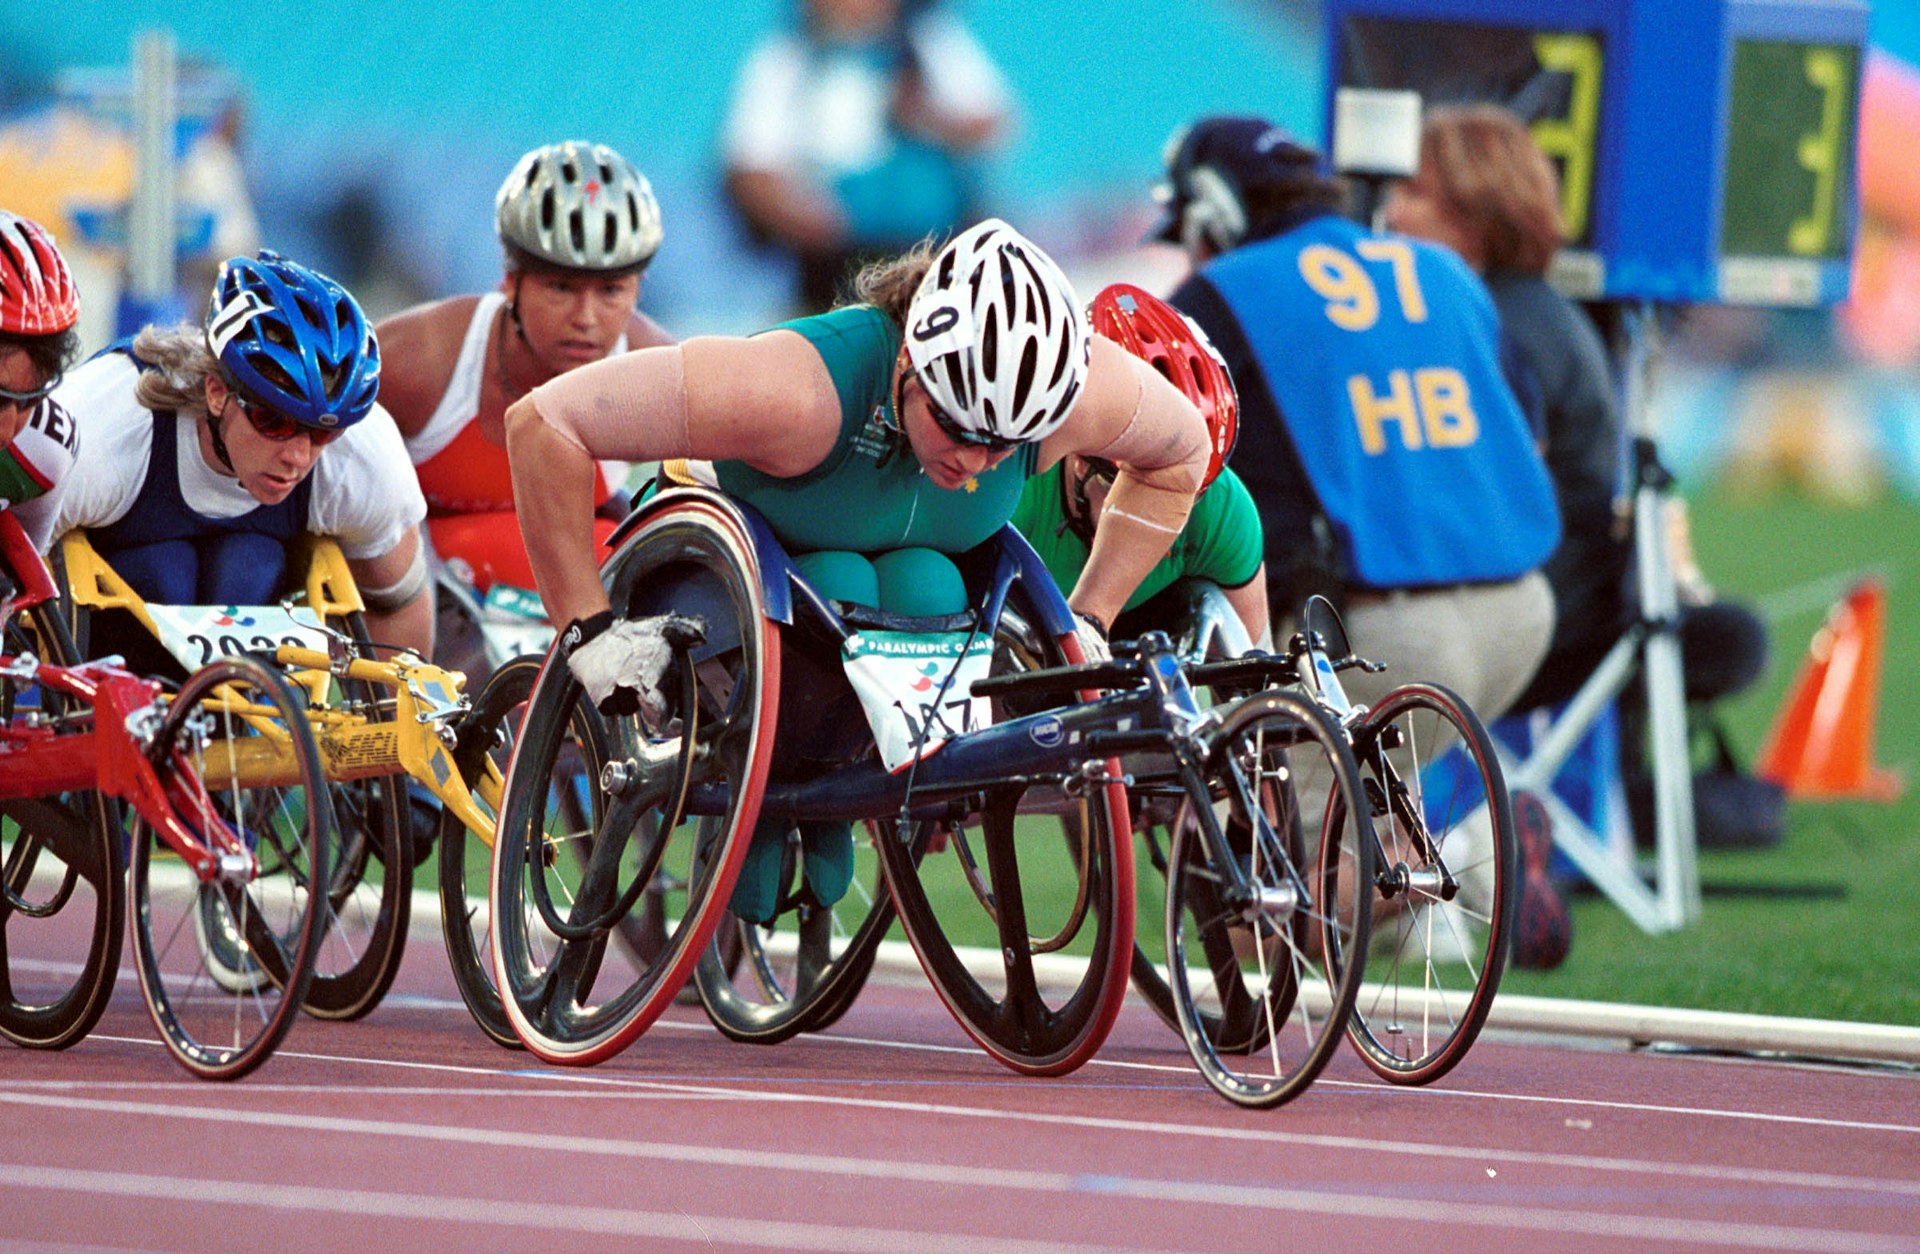 Do the Paralympics enforce harmful narratives?